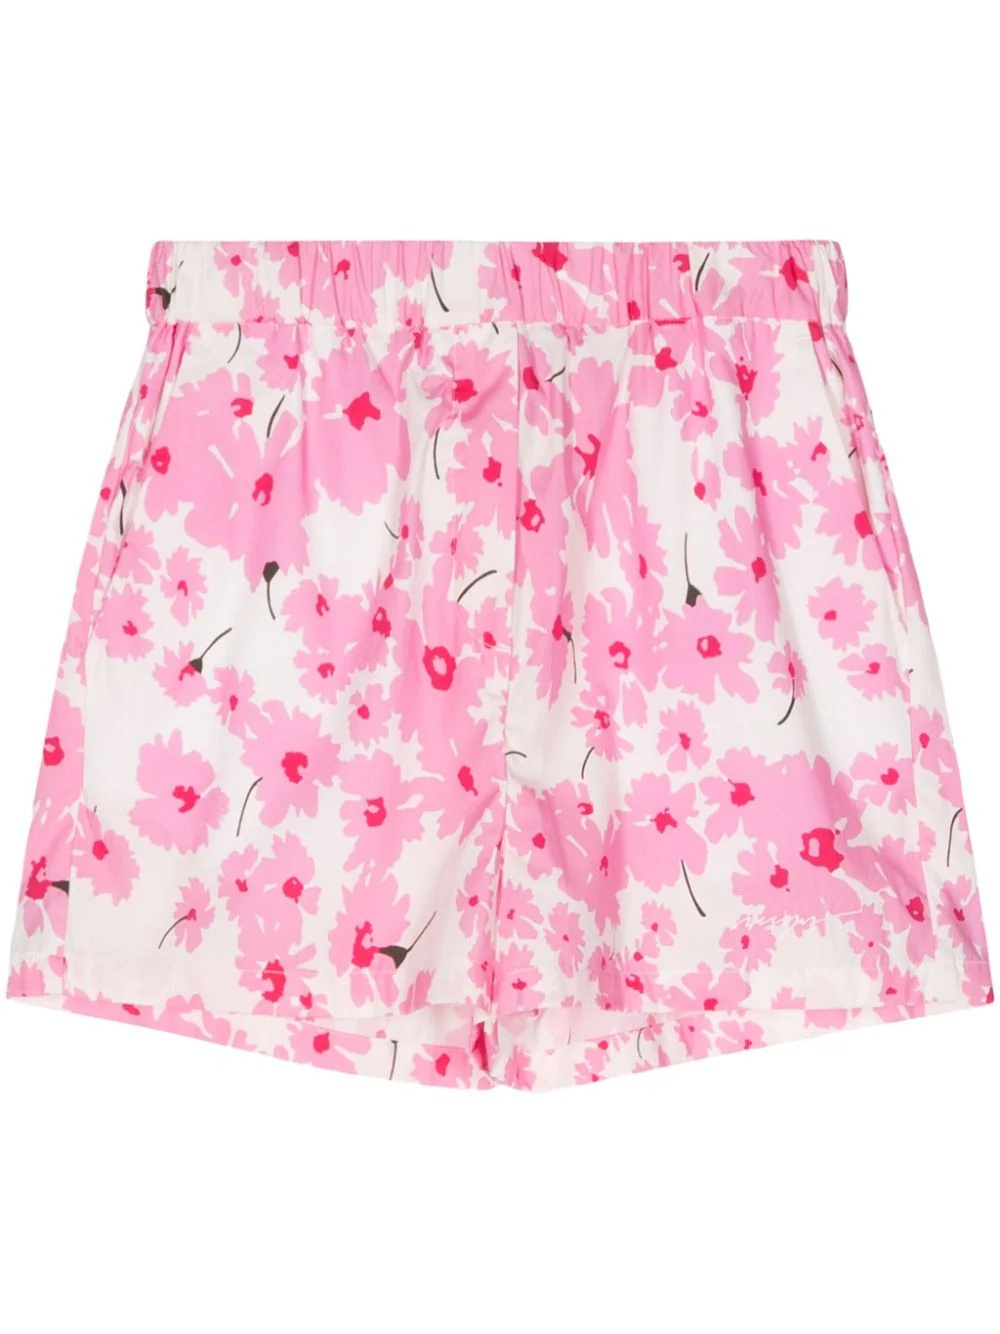 Daisy Print Shorts - 1